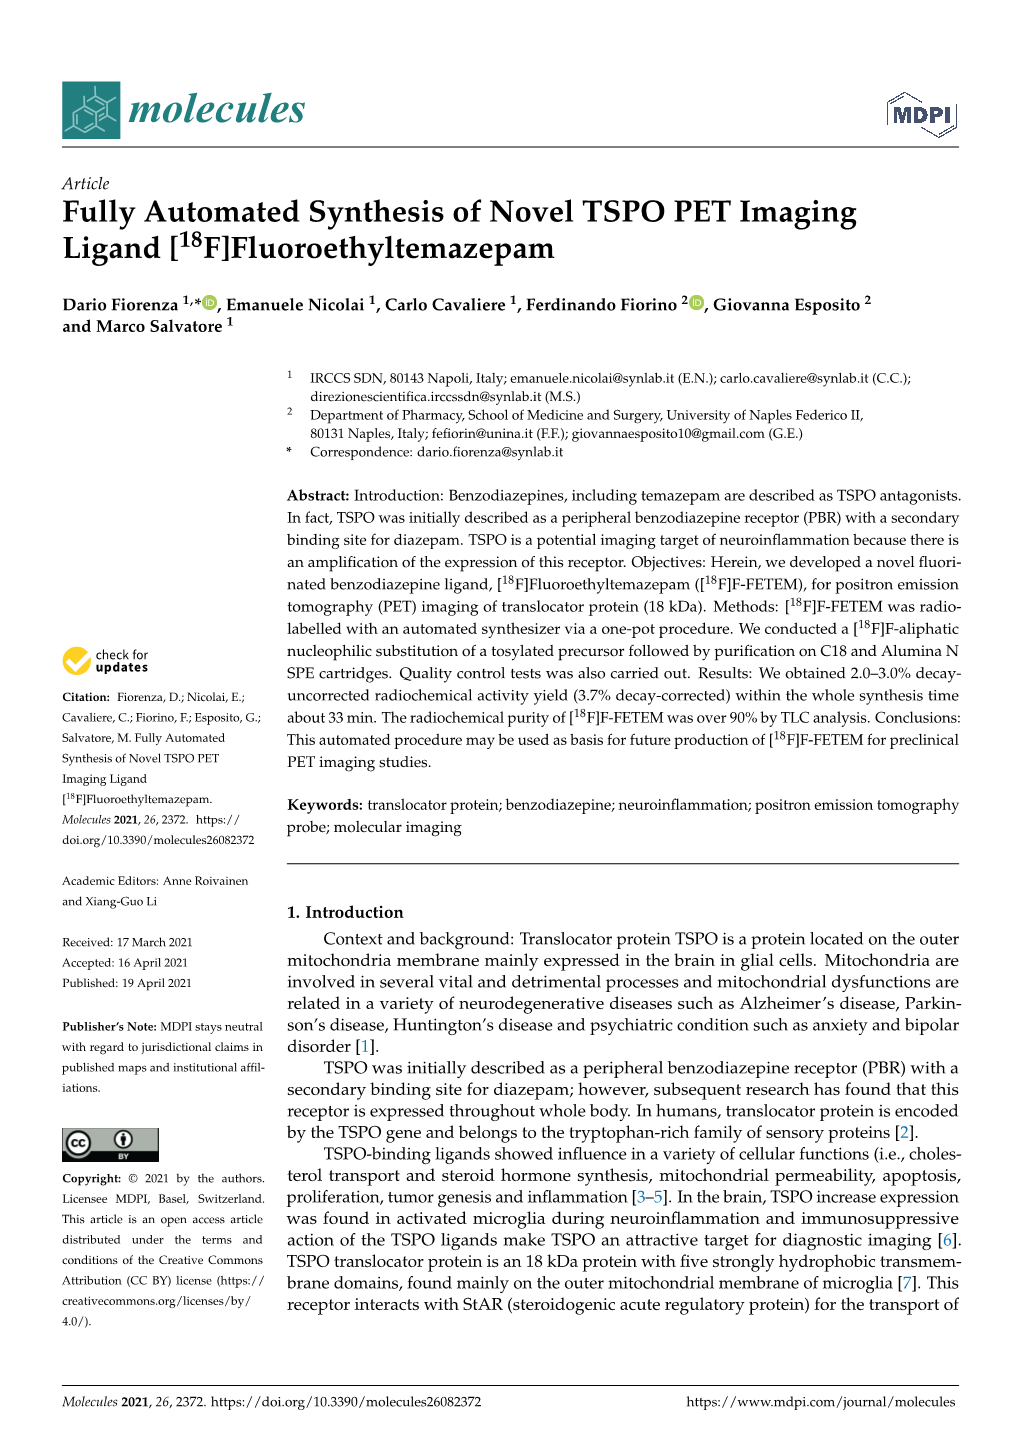 Fully Automated Synthesis of Novel TSPO PET Imaging Ligand [18F]Fluoroethyltemazepam